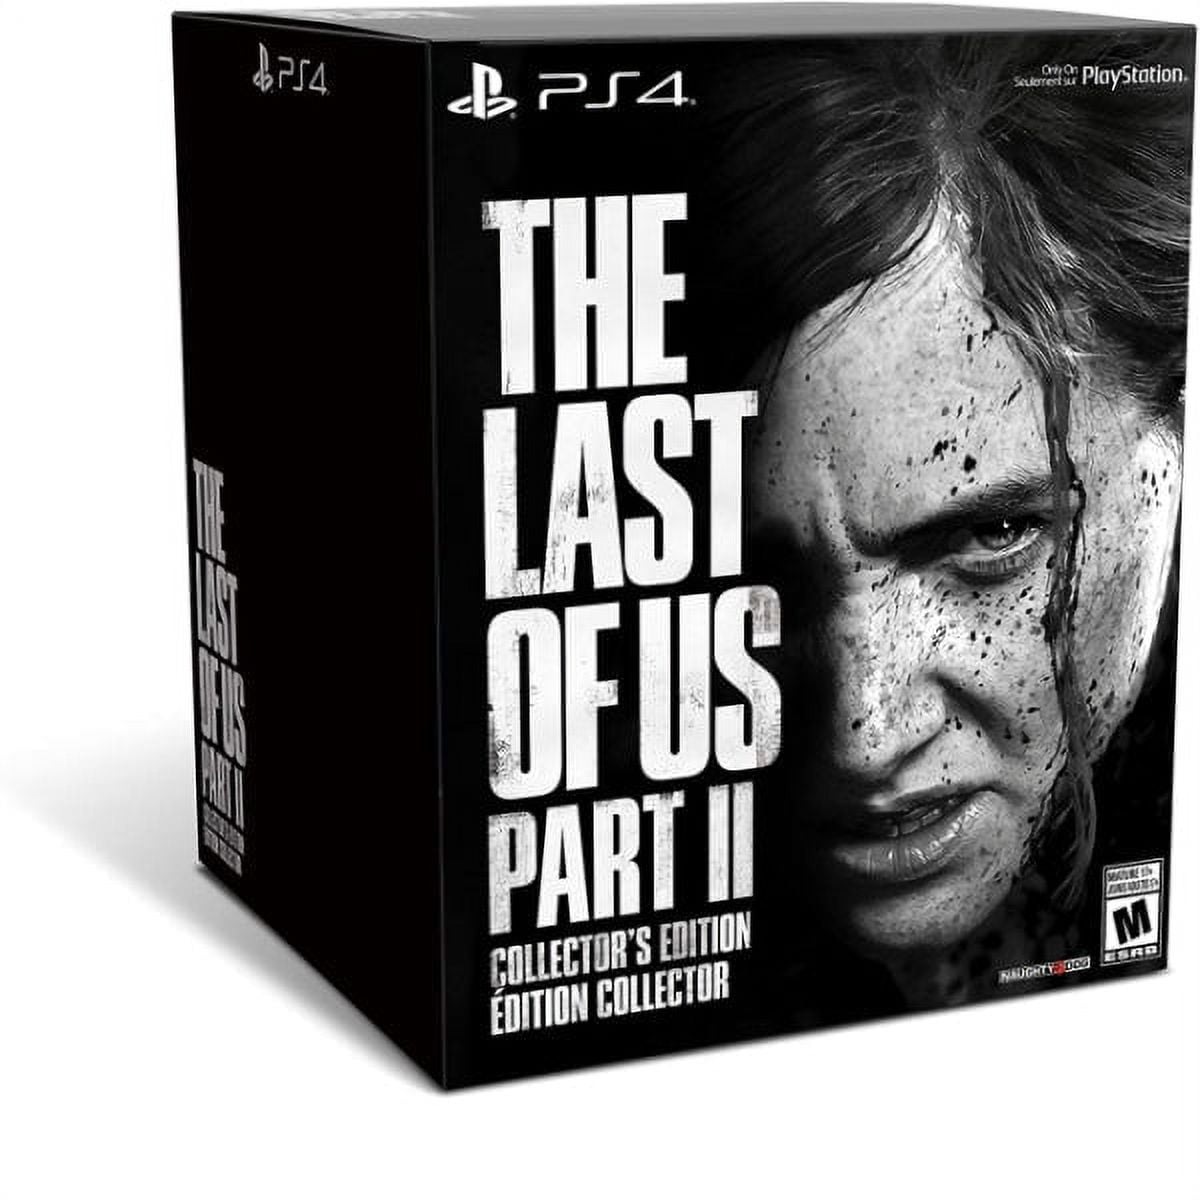 The Last of Us Part I: preço, edições, data e muito mais!